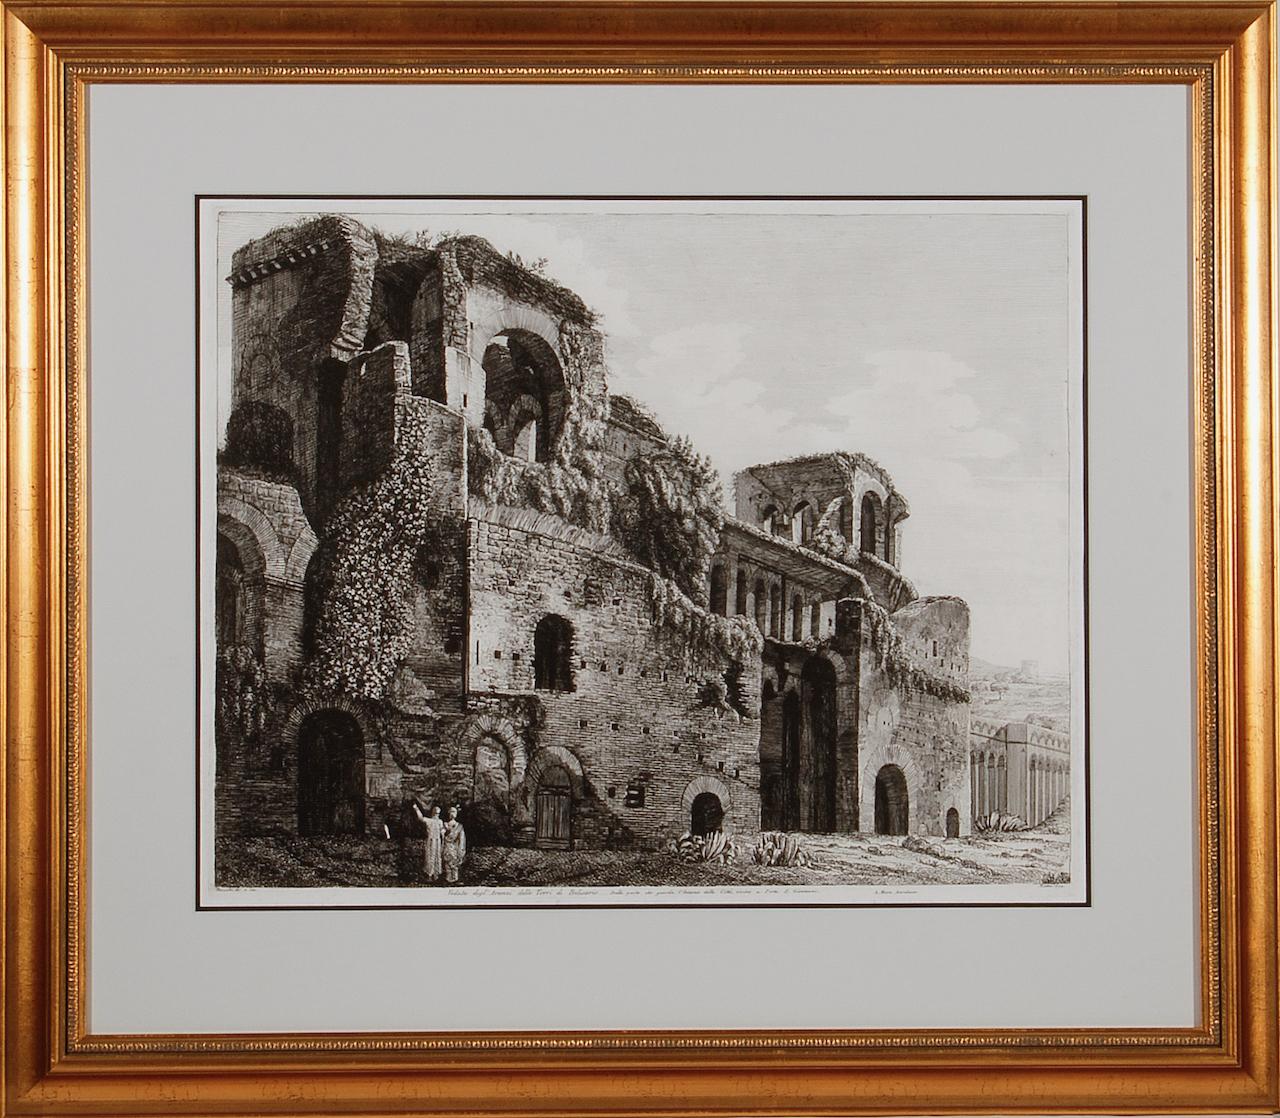 Ruinen der römischenäder von Belisarius: Eine Radierung von Luigi Rossini aus dem 19. Jahrhundert